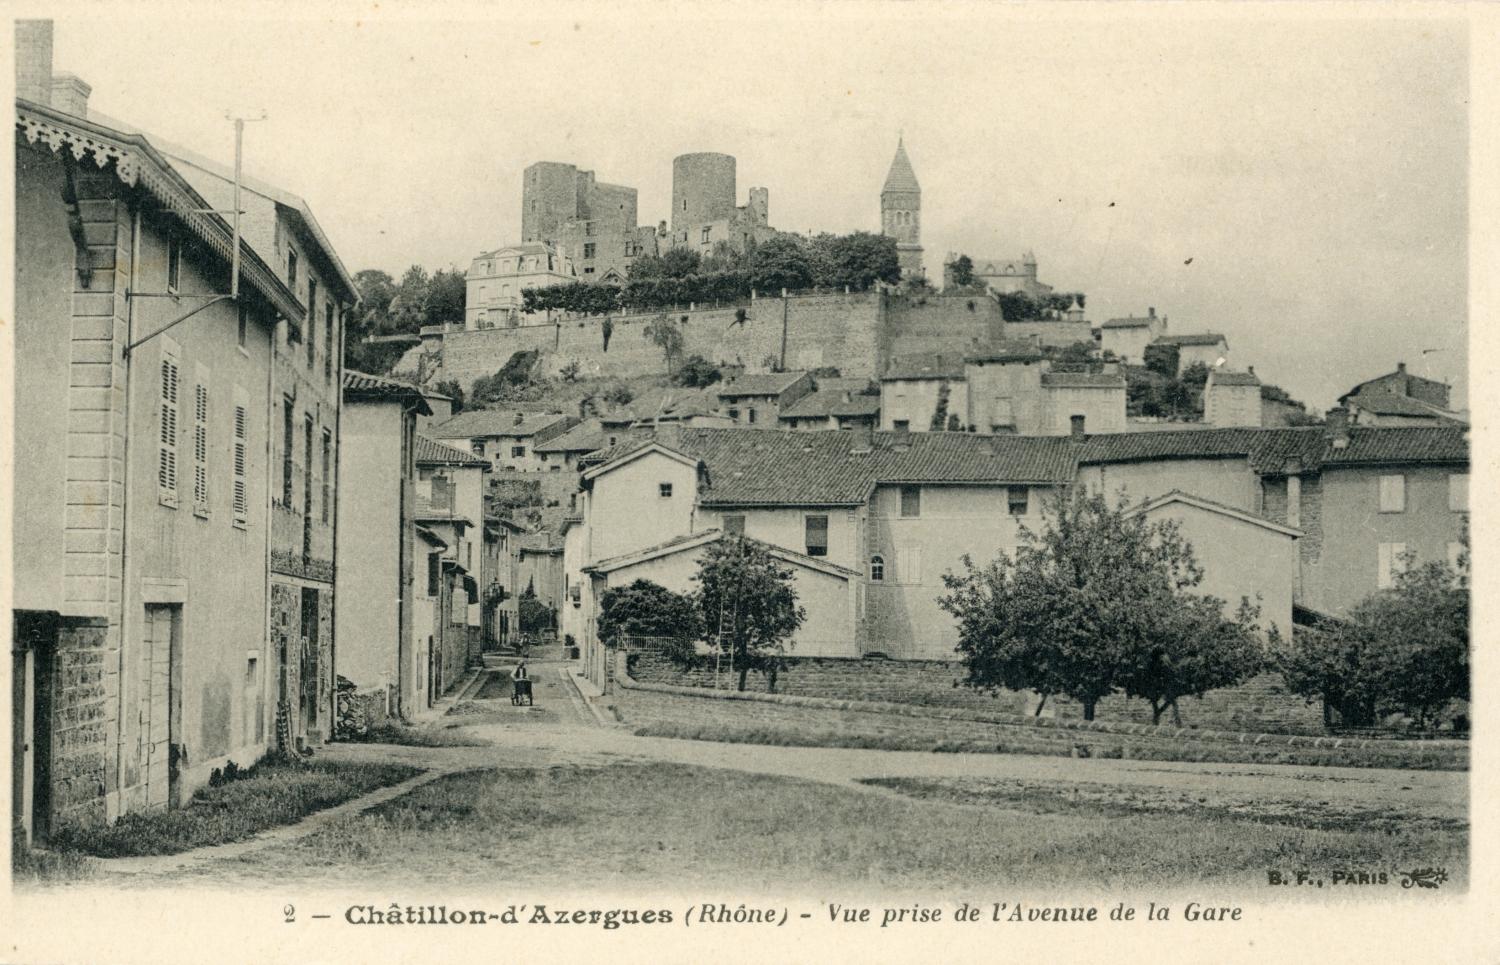 Châtillon-d'Azergues (Rhône). - Vue prise de l'avenue de la Gare